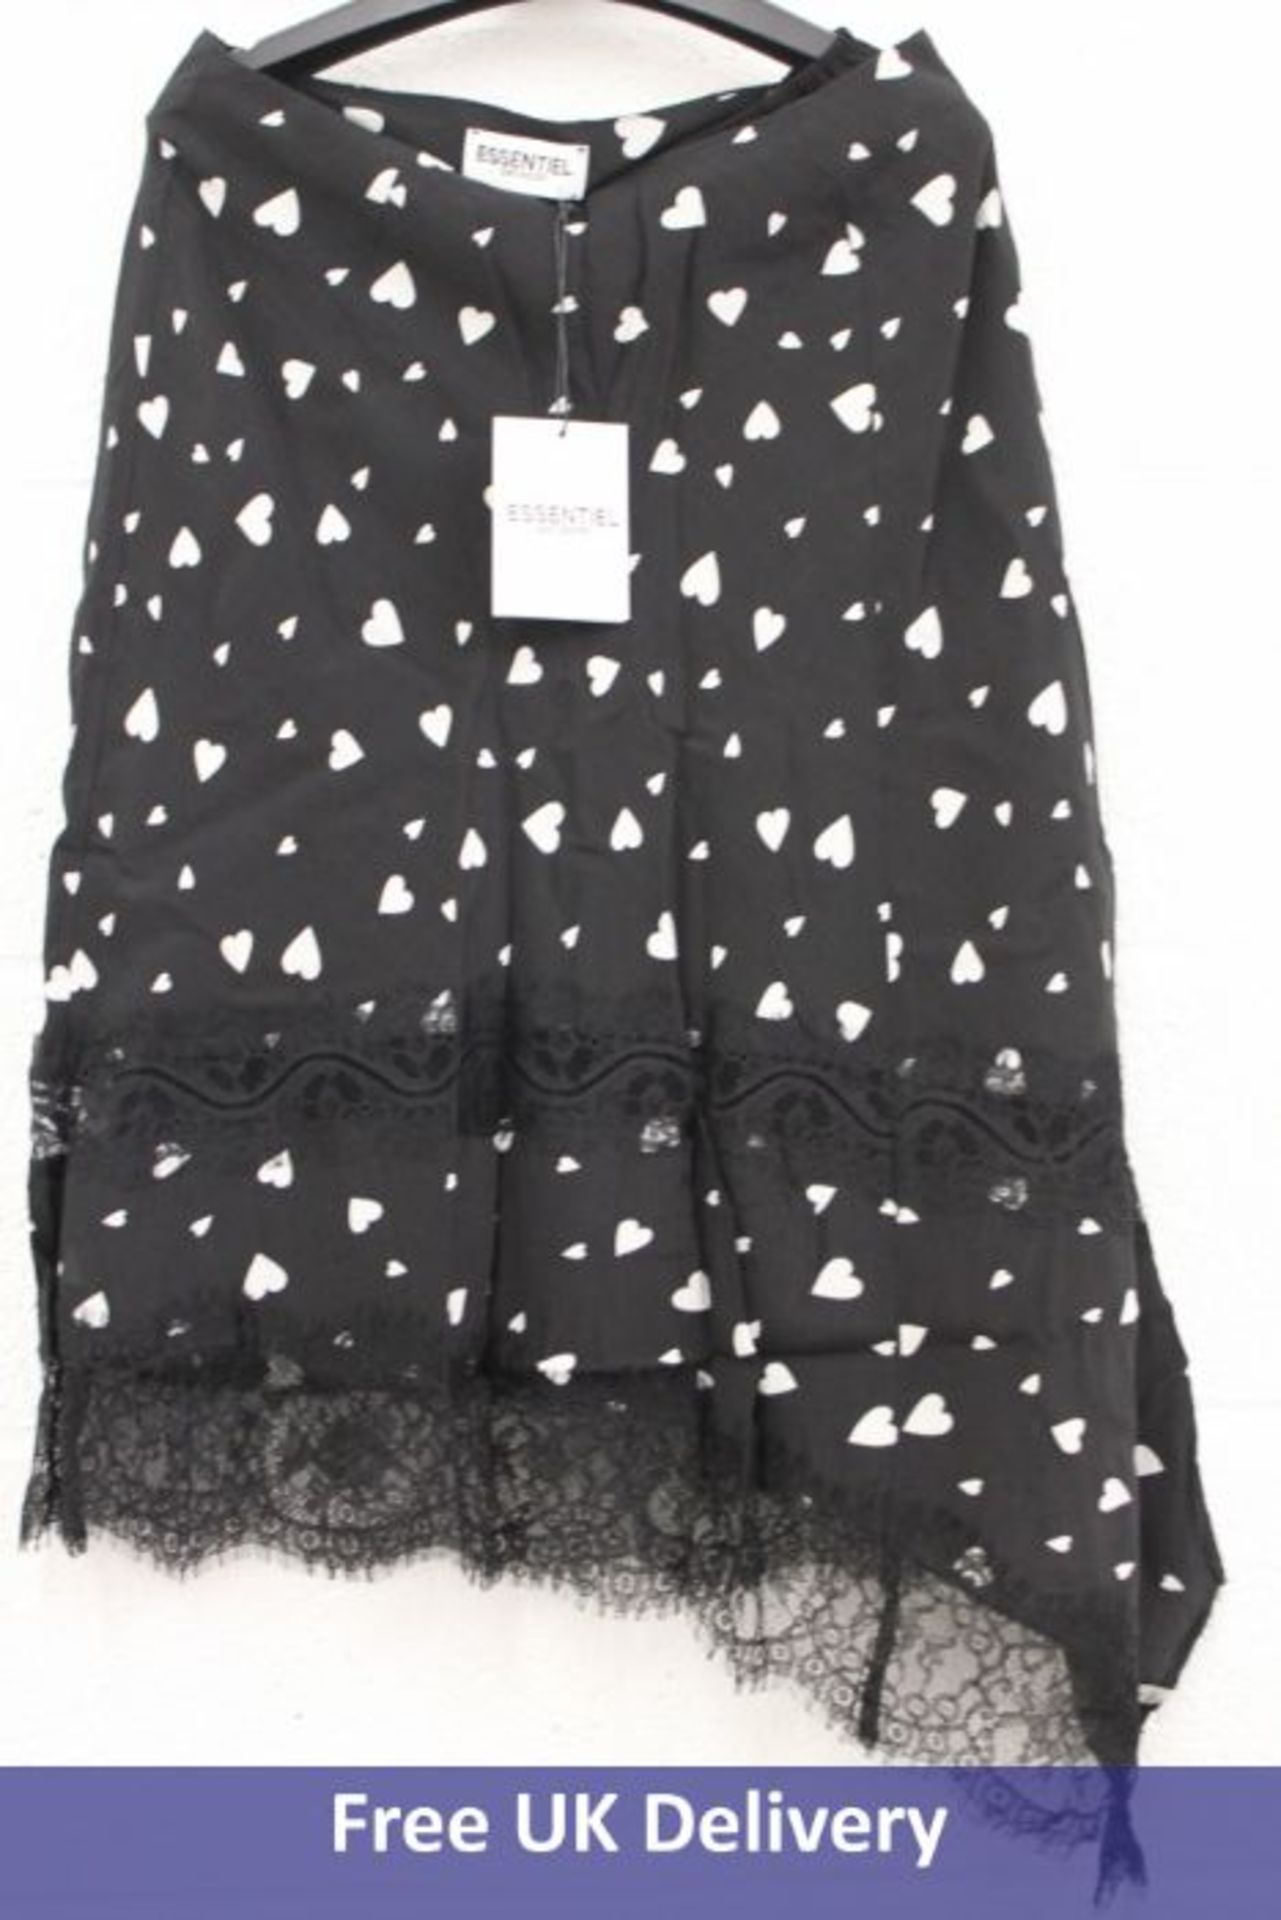 Essentiel Antwerp Zanary Lace Detail Skirt, Combo1 Black Z1BL, Size 38